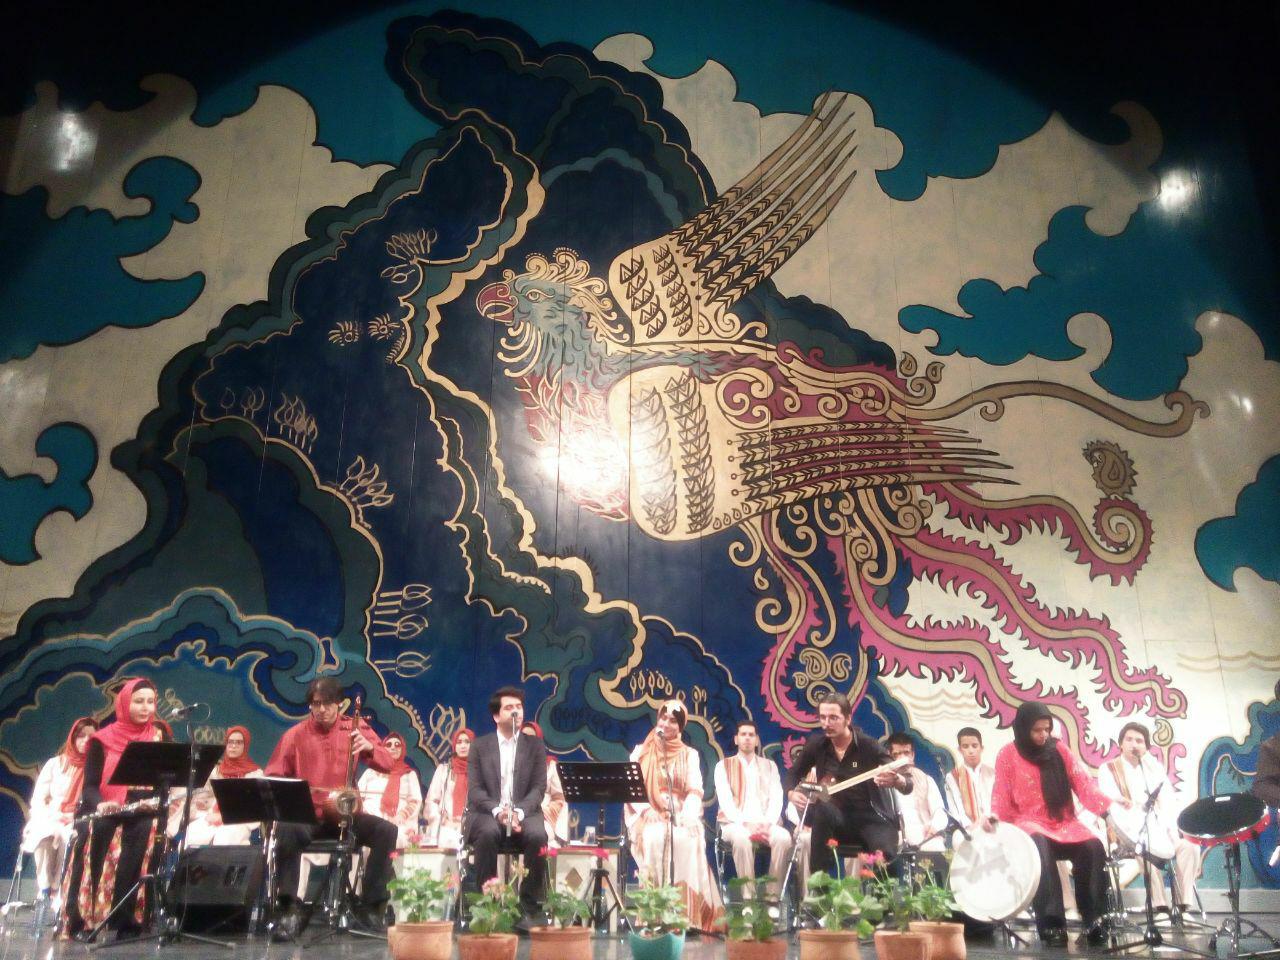 کنسرت هم آوایی گروه دست افشان با گروه تیام، روز جمعه، بیستم مرداد، در تالار وحدت تهران برگزار شد